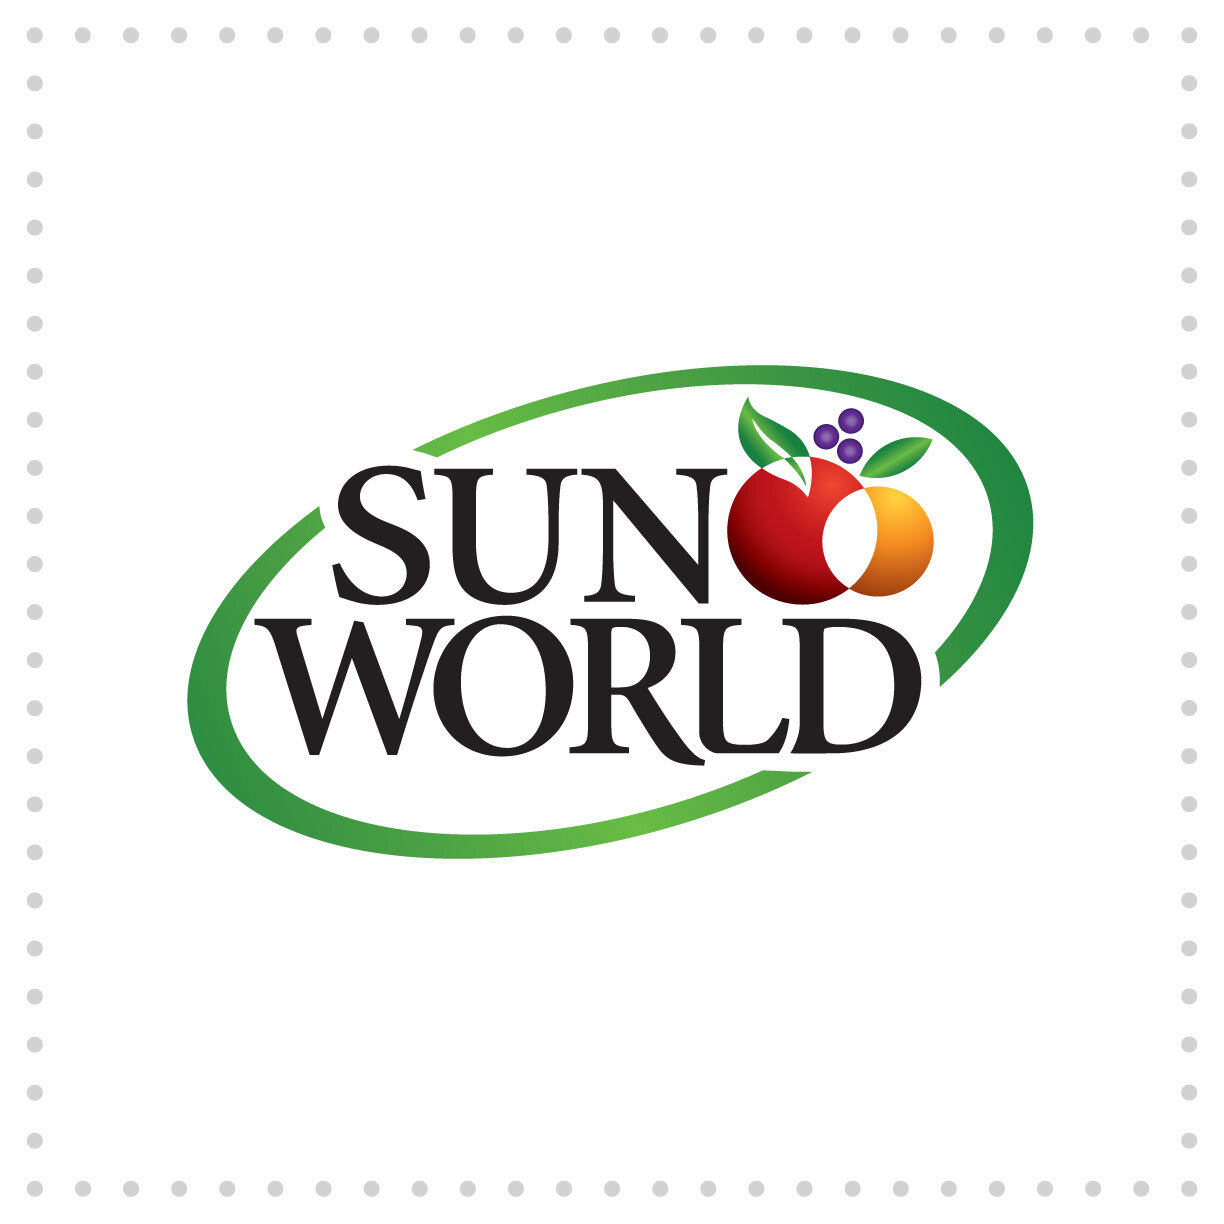 Ball-LogoDesign-SunWorld.jpg